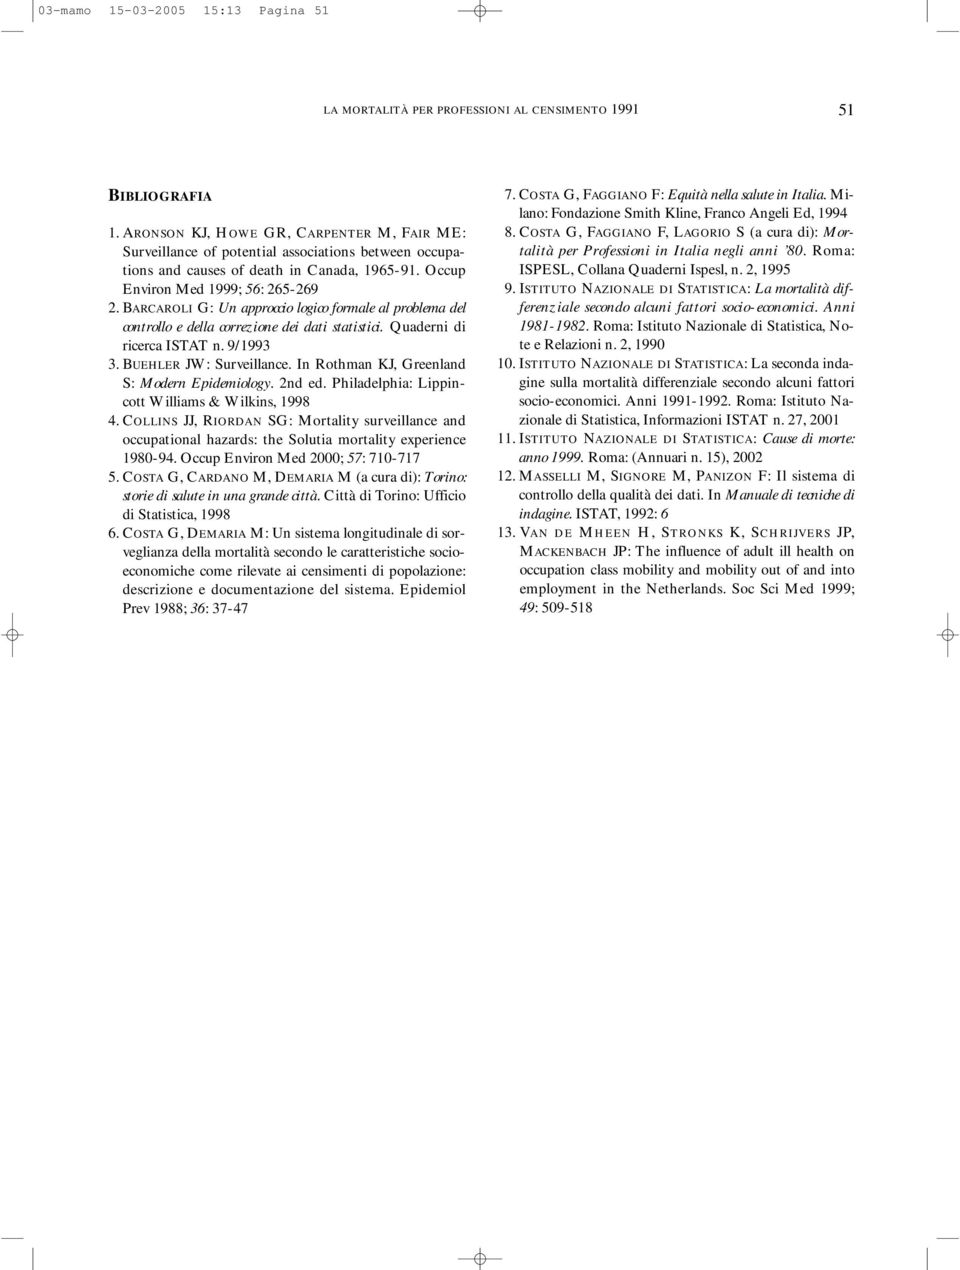 BARCAROLI G: Un approccio logico formale al problema del controllo e della correzione dei dati statistici. Quaderni di ricerca ISTAT n. 9/1993 3. BUEHLER JW: Surveillance.